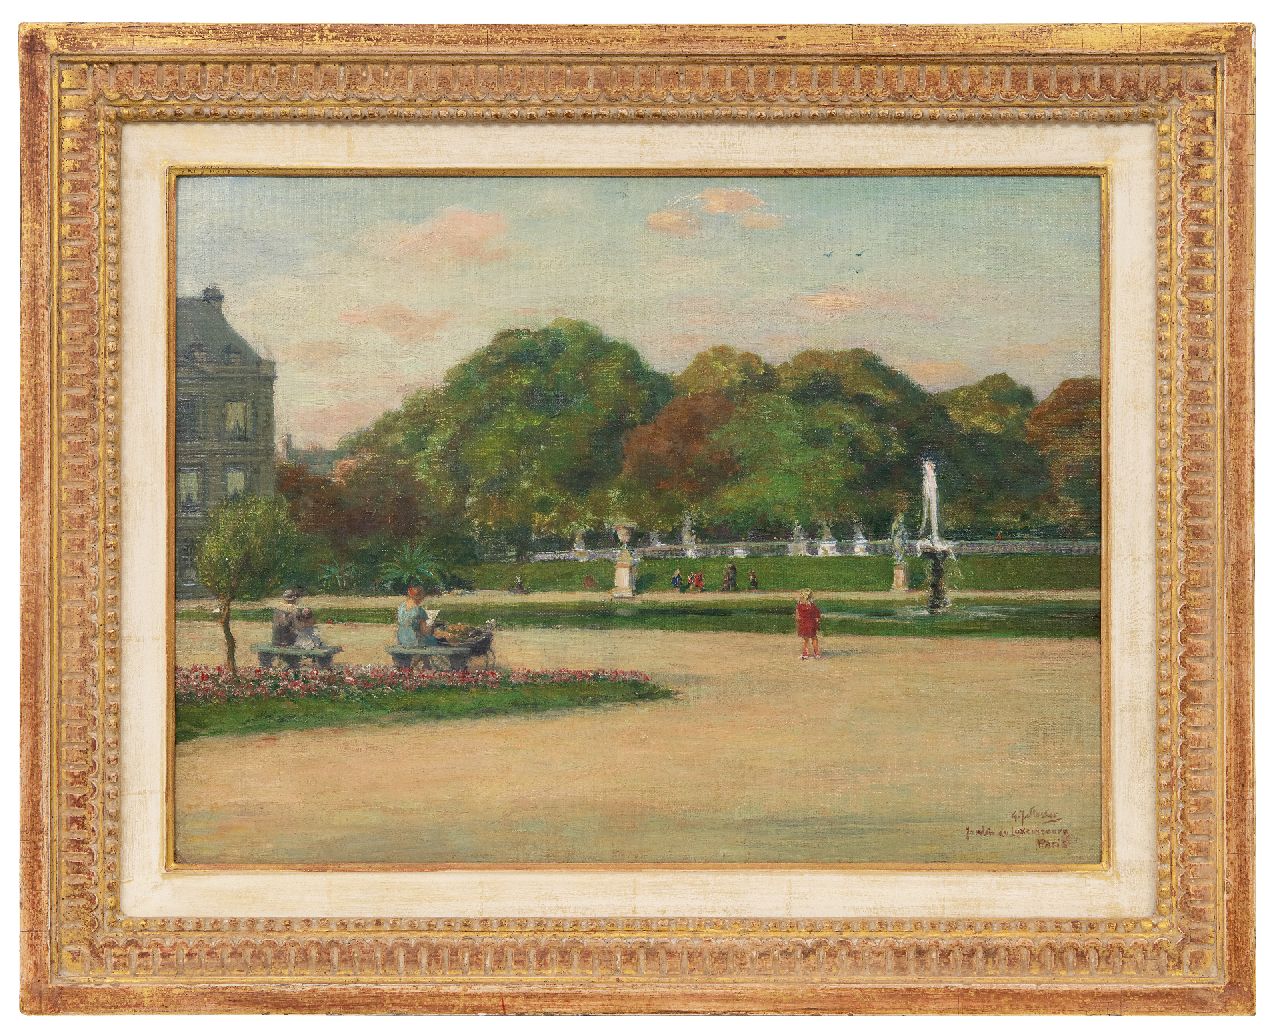 Staller G.J.  | Gerard Johan Staller | Schilderijen te koop aangeboden | Jardin du Luxembourg, Parijs, olieverf op doek op paneel 35,8 x 48,2 cm, gesigneerd rechtsonder